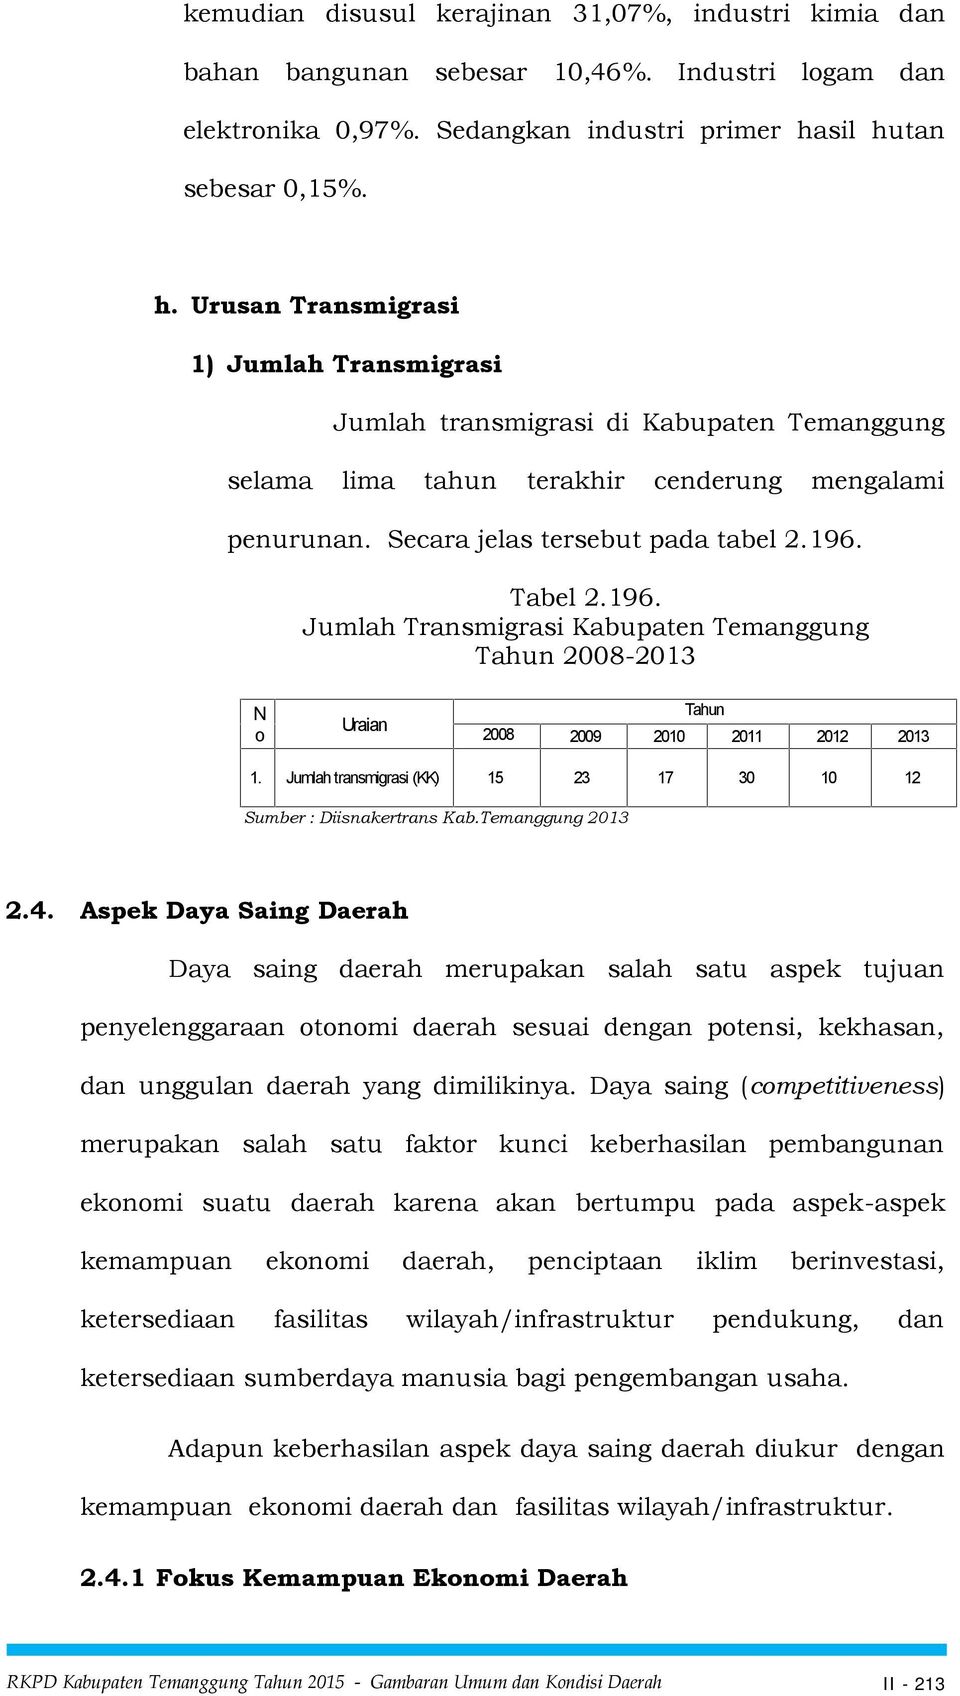 Tabel 2.196. Transmigrasi Kabupaten Temanggung Tahun 2008-2013 N o Uraian Tahun 2008 2009 2010 2011 2012 2013 1. transmigrasi (KK) 15 23 17 30 10 12 Sumber : Diisnakertrans Kab.Temanggung 2013 2.4.